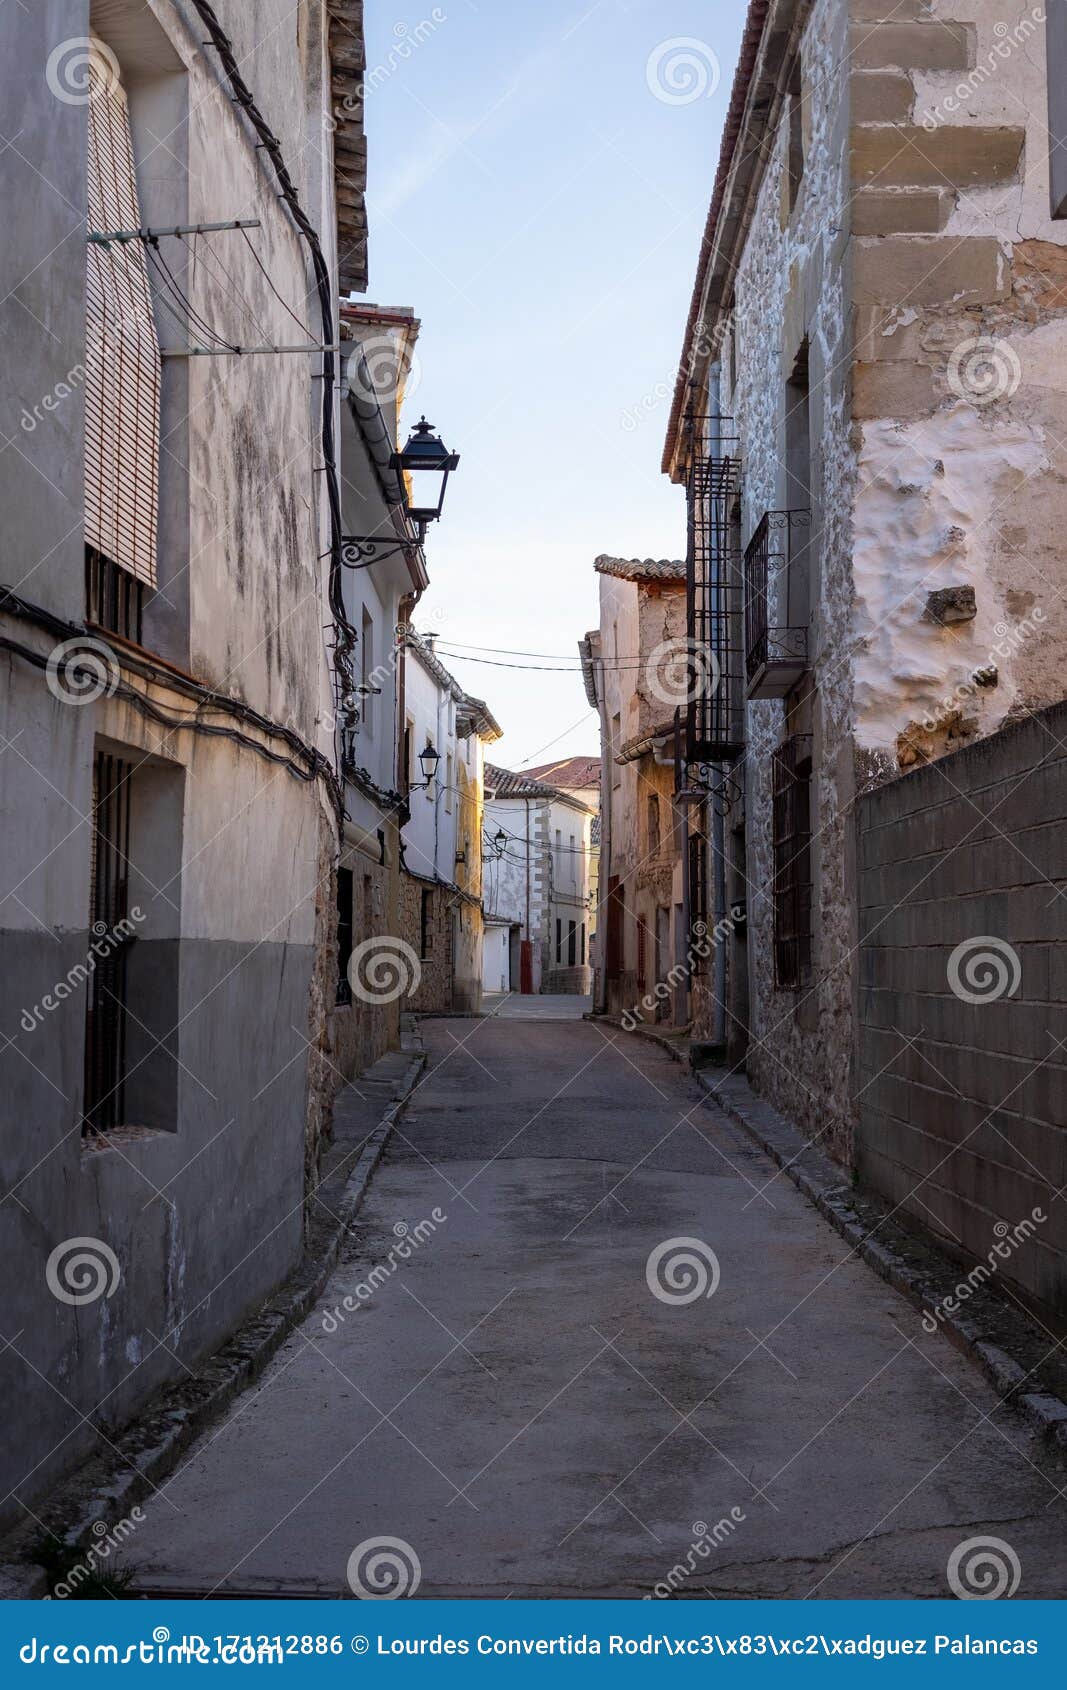 street in pareja, guadalajara, spain